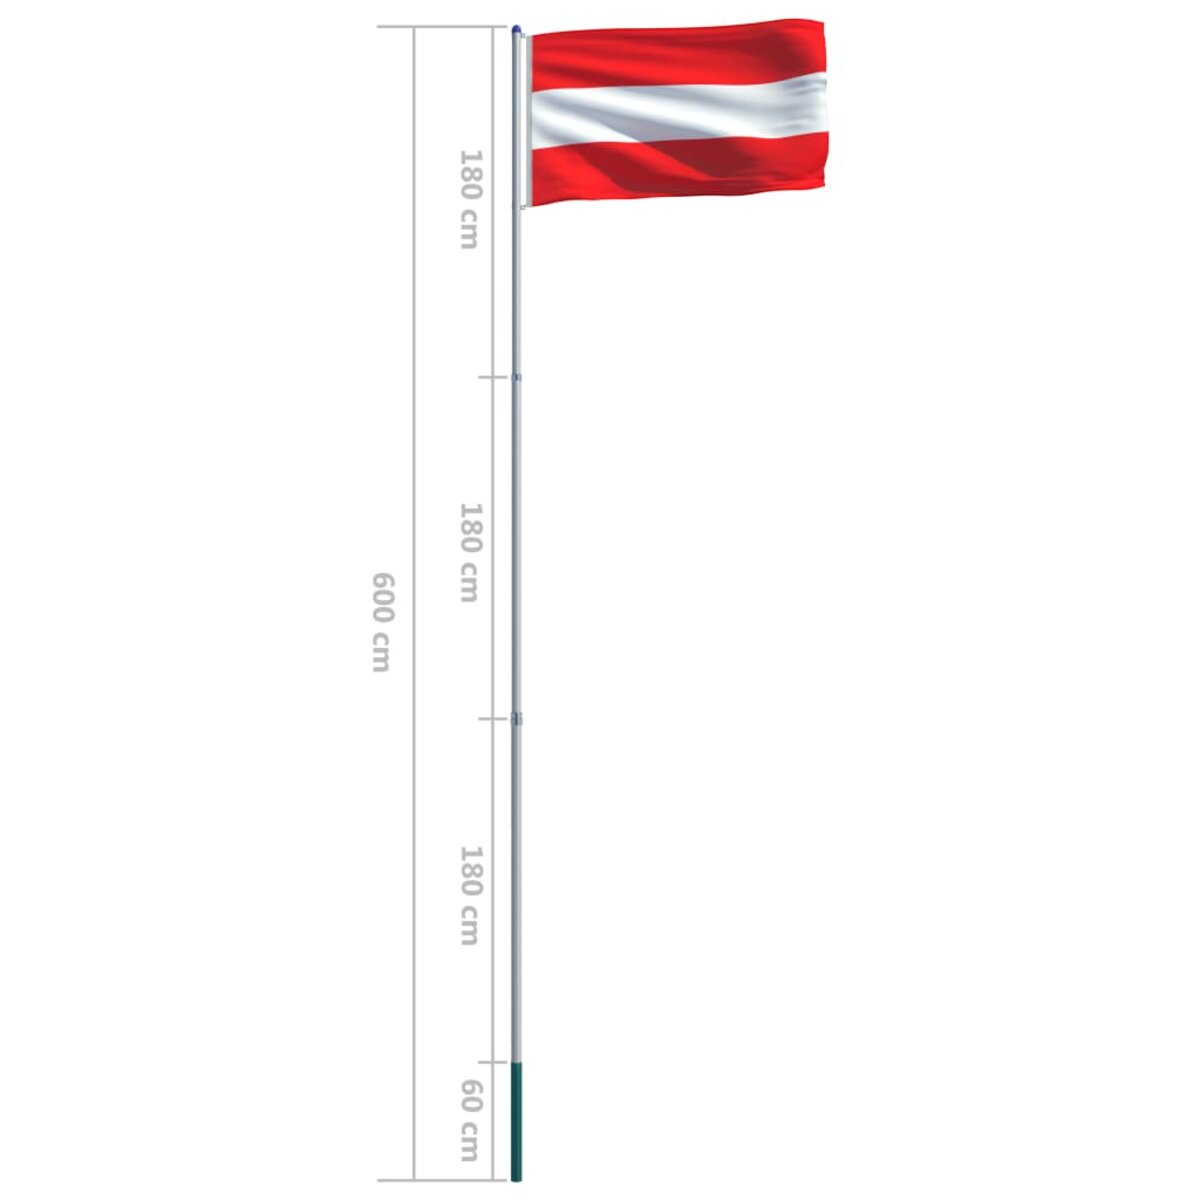 Anneaux olympiques PNG transparents - StickPNG